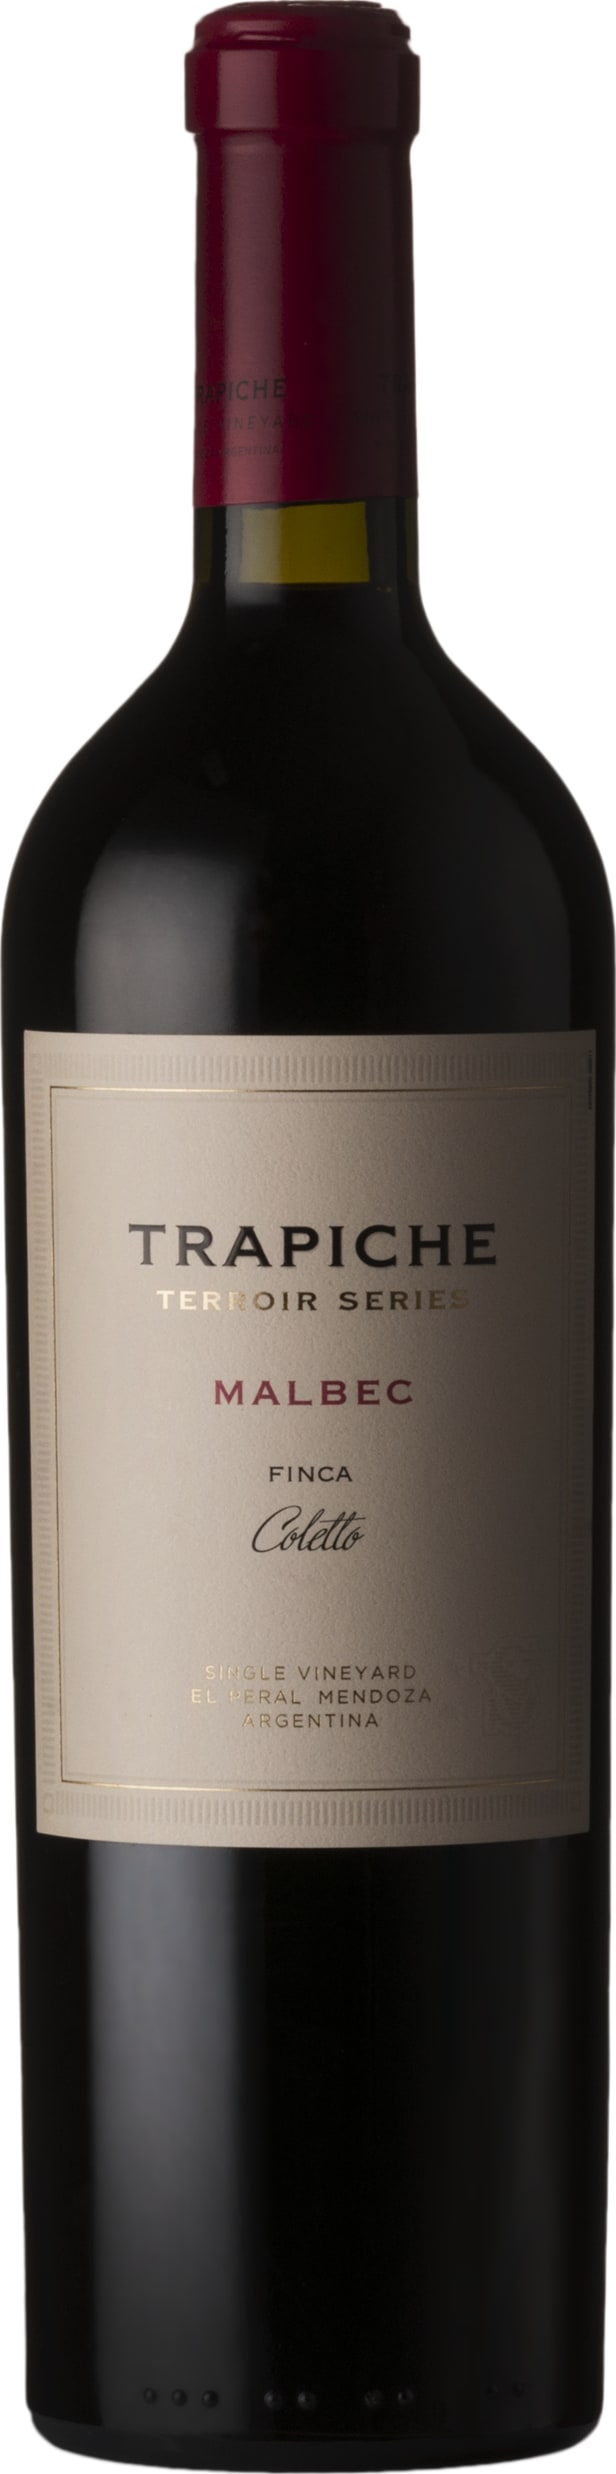 Trapiche Terroir Series Finca Coletto 2018 75cl - Buy Trapiche Wines from GREAT WINES DIRECT wine shop